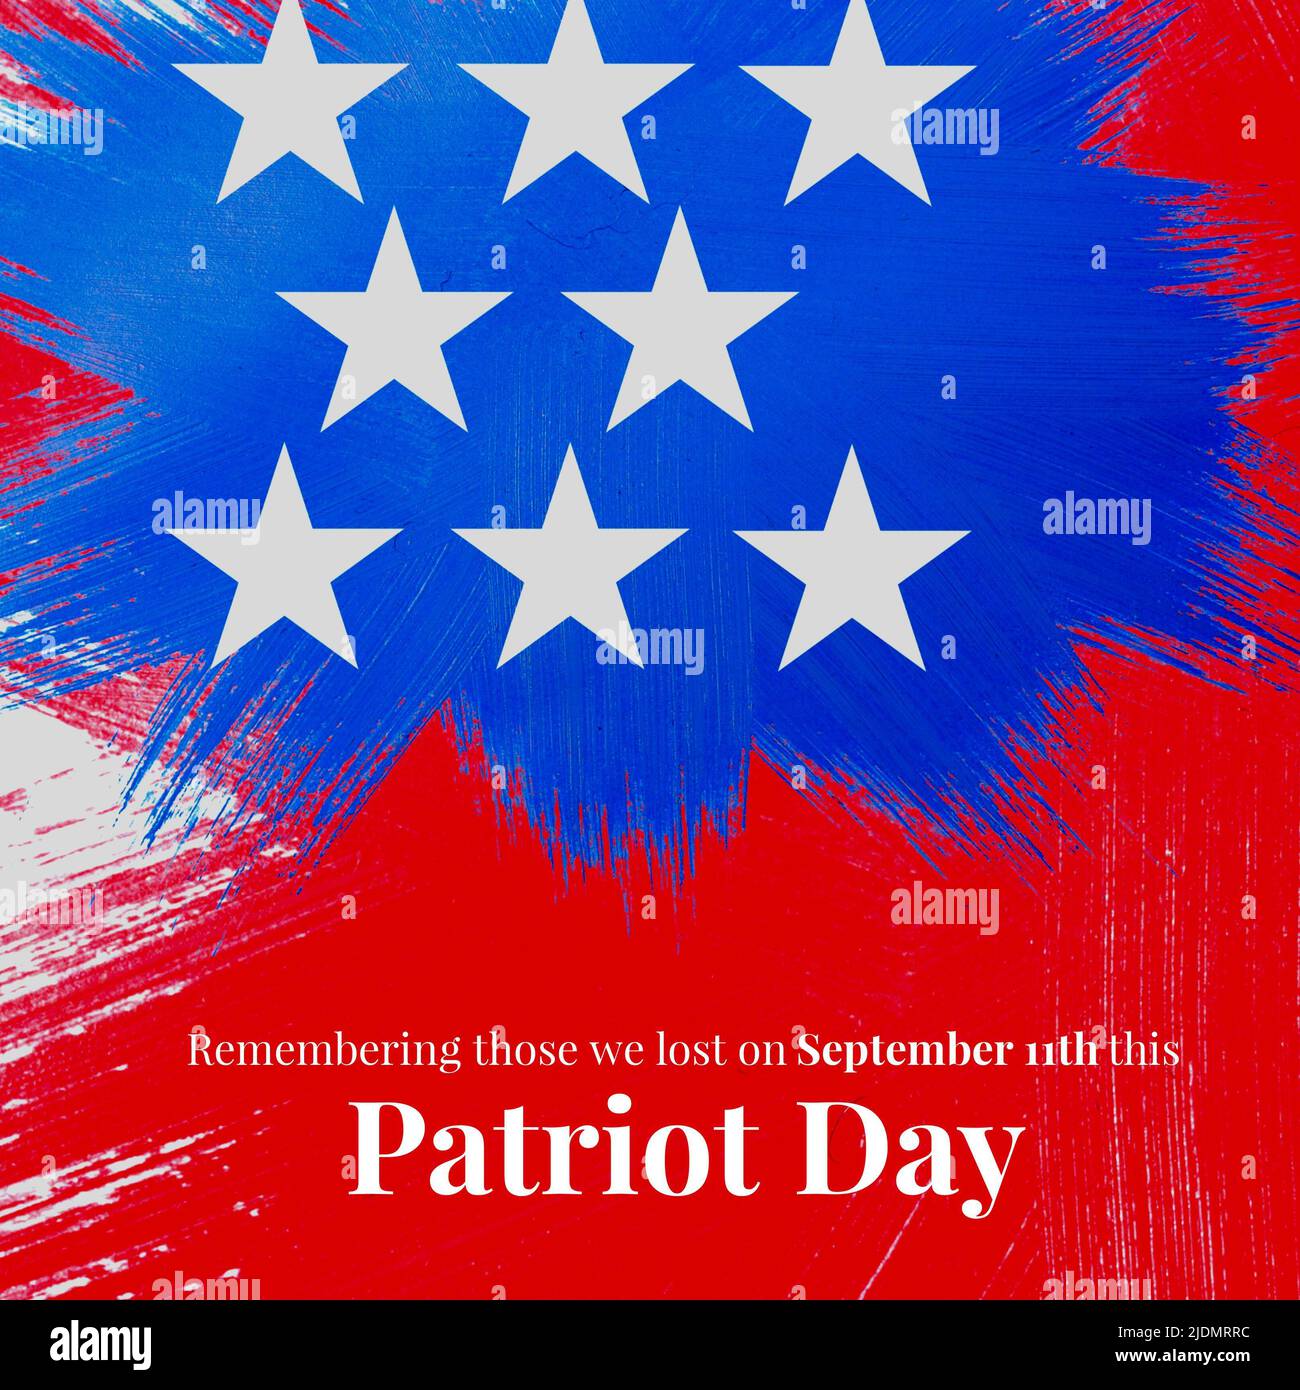 Ilustración de recordar a aquellos que perdimos el 11th de septiembre este día patriota con formas de estrella Foto de stock